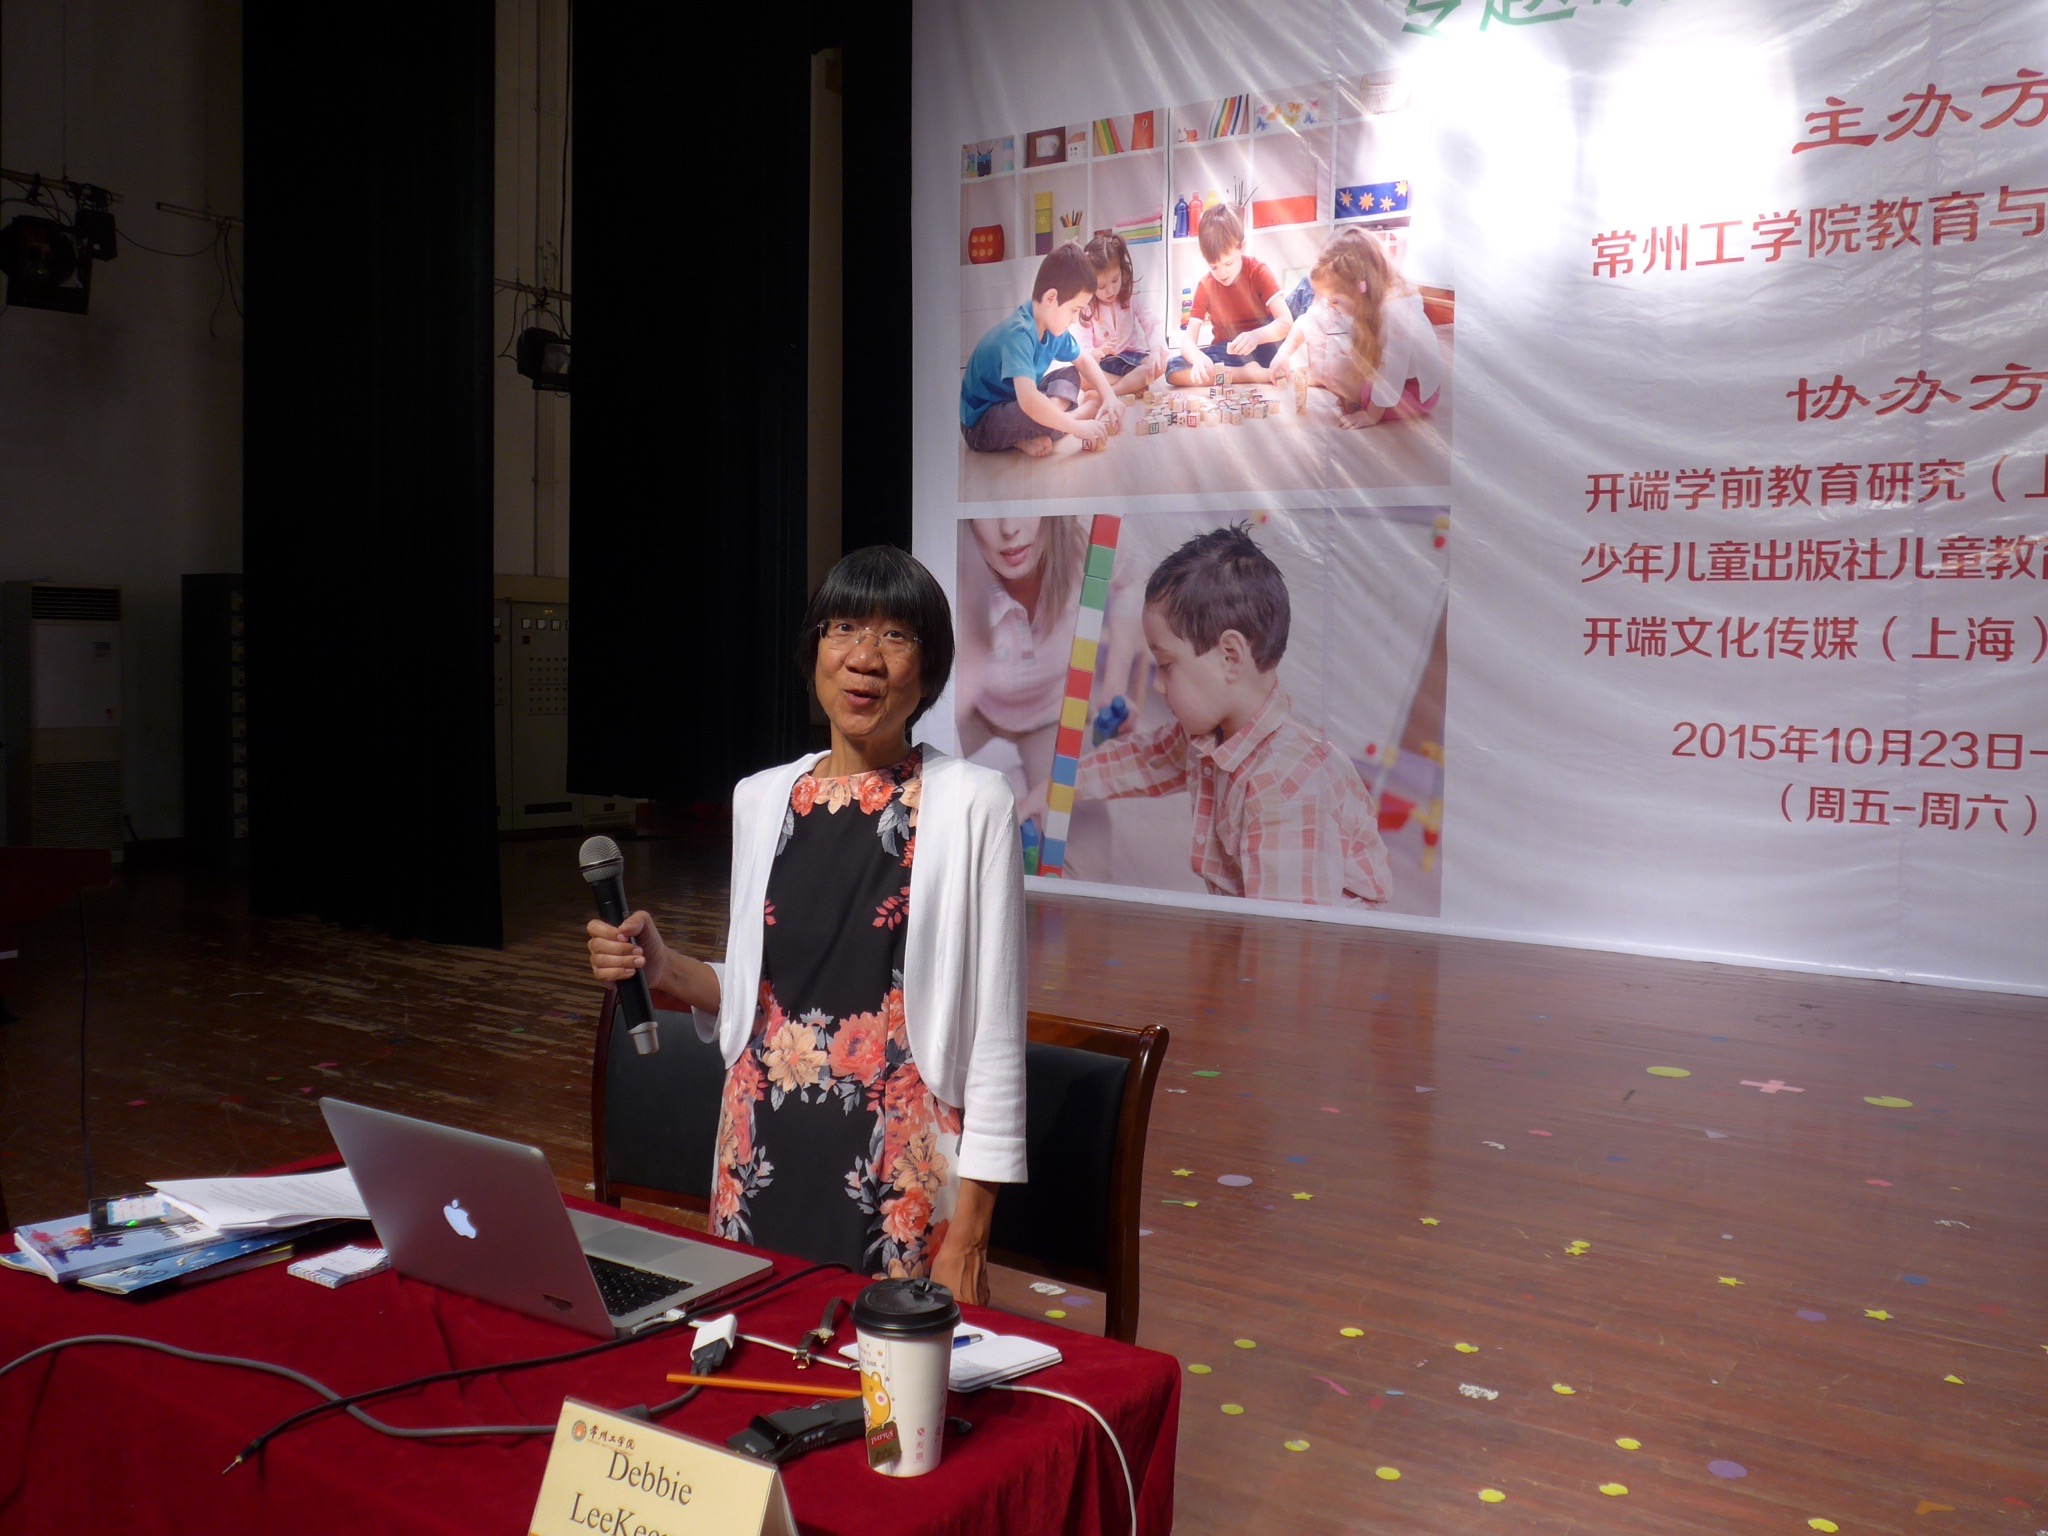 Debbie LeeKeenan presenting in Nanjing University